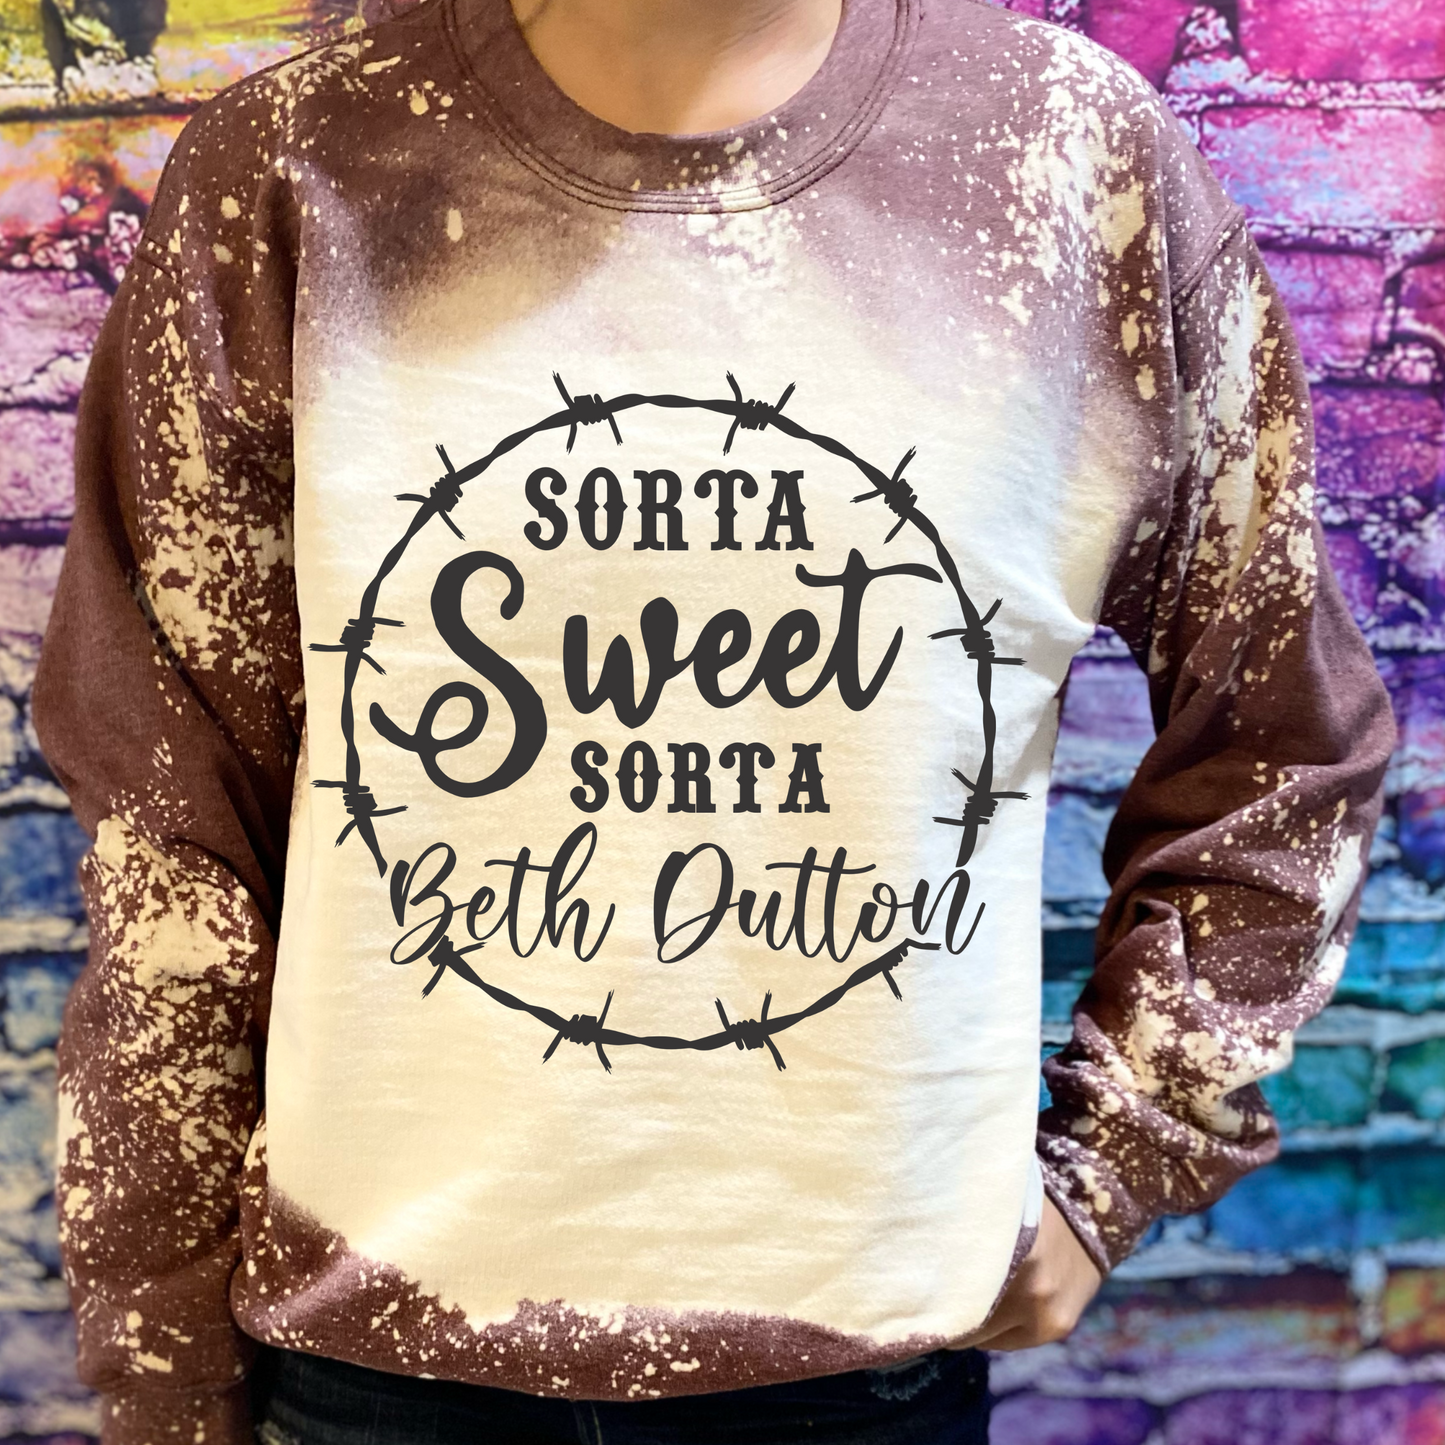 Sorta Sweet Sorta Beth Dutton Bleached Sweatshirt